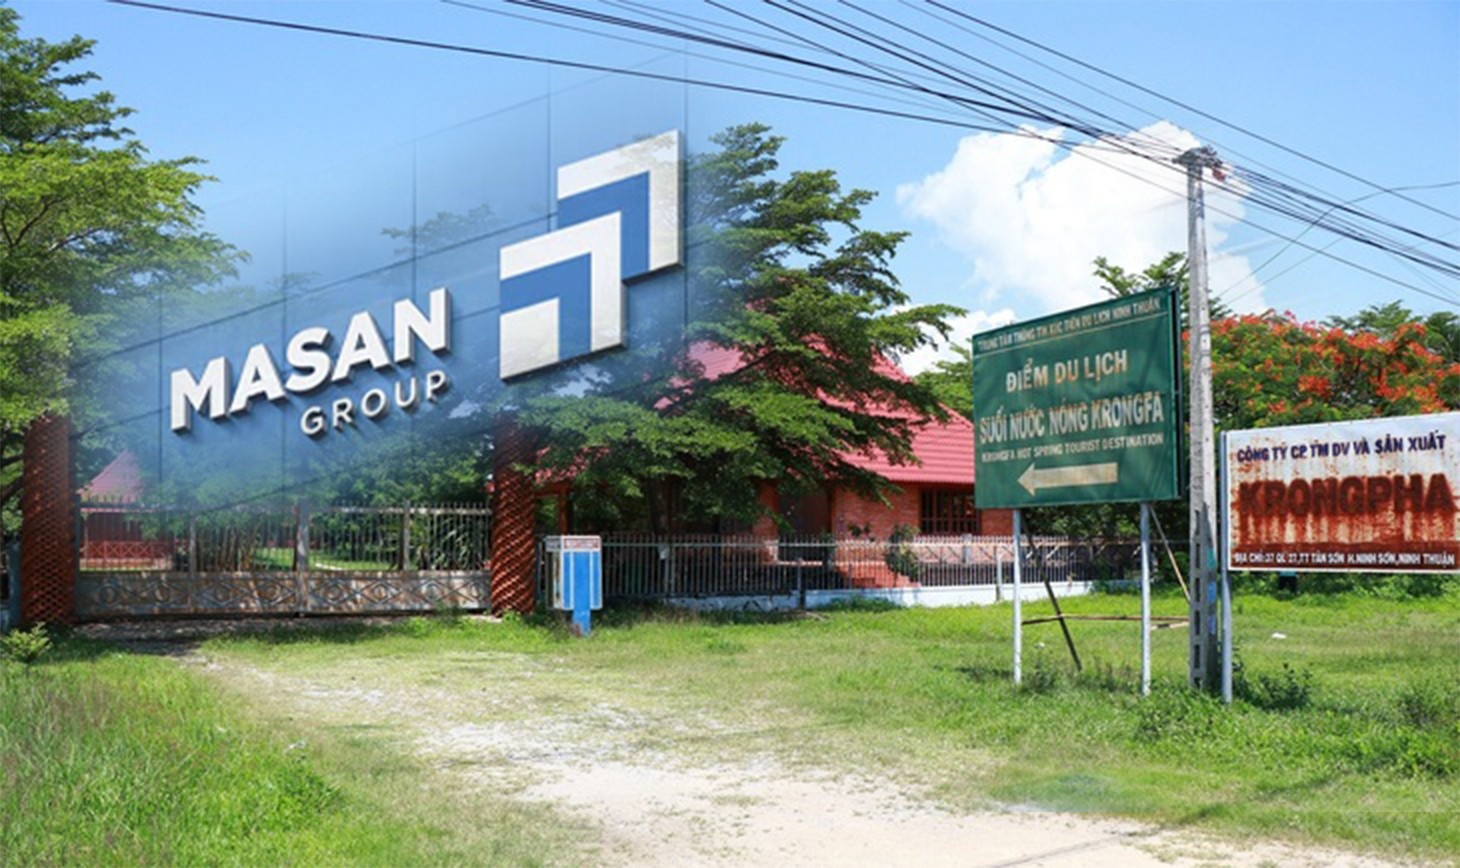 Tin bất động sản ngày 16/1: Masan muốn “tái sinh” dự án nghỉ dưỡng dở dang 15 năm ở Ninh Thuận